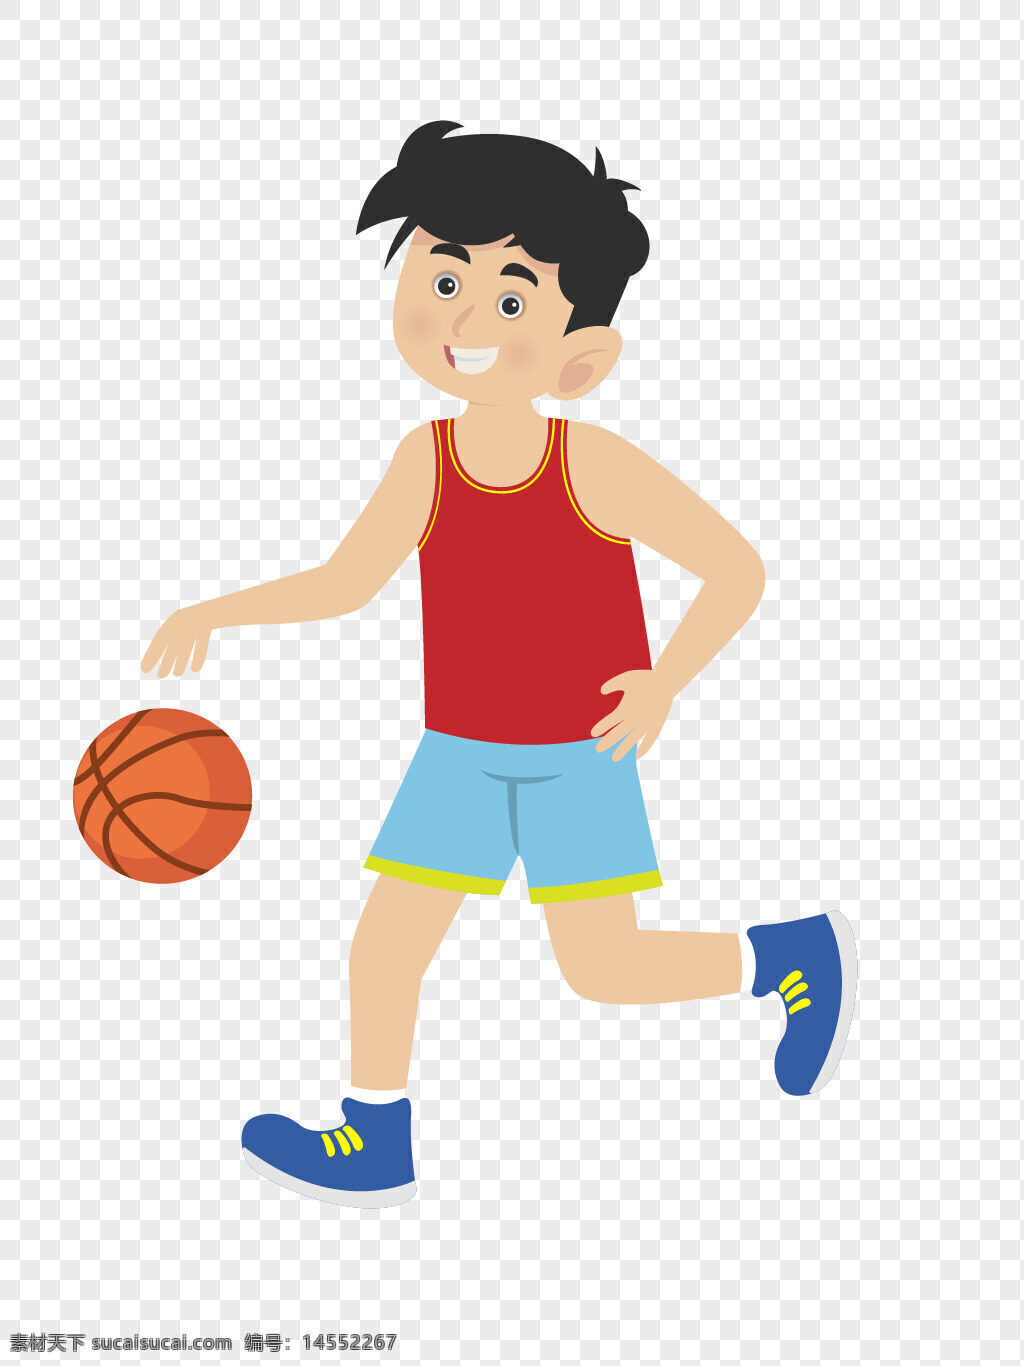 矢量图 红色 打篮球 男子 打篮球男子 带球 运球 运动 健身 打篮球的人 矢量图带球运球 运动健身 矢量图带球运球运动健身打篮球的人